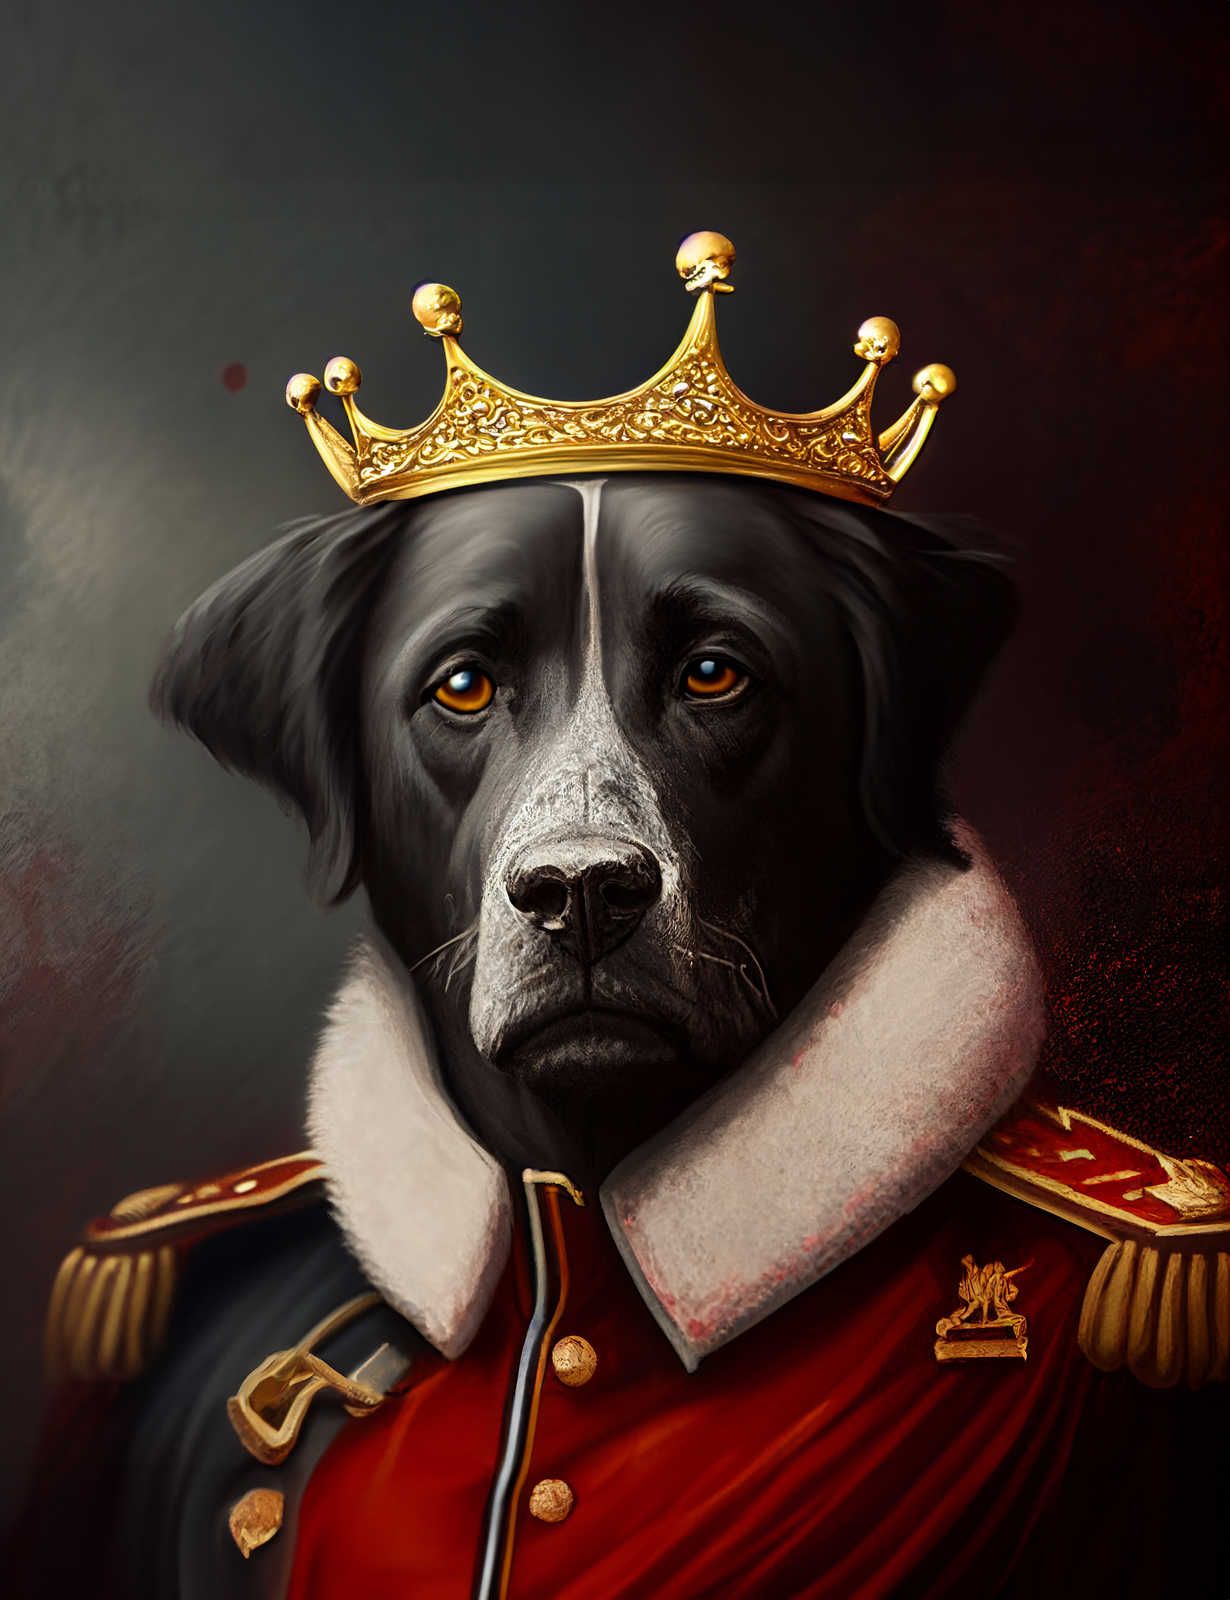             KI Canvas painting »Royal Dog« - 80 cm x 120 cm
        